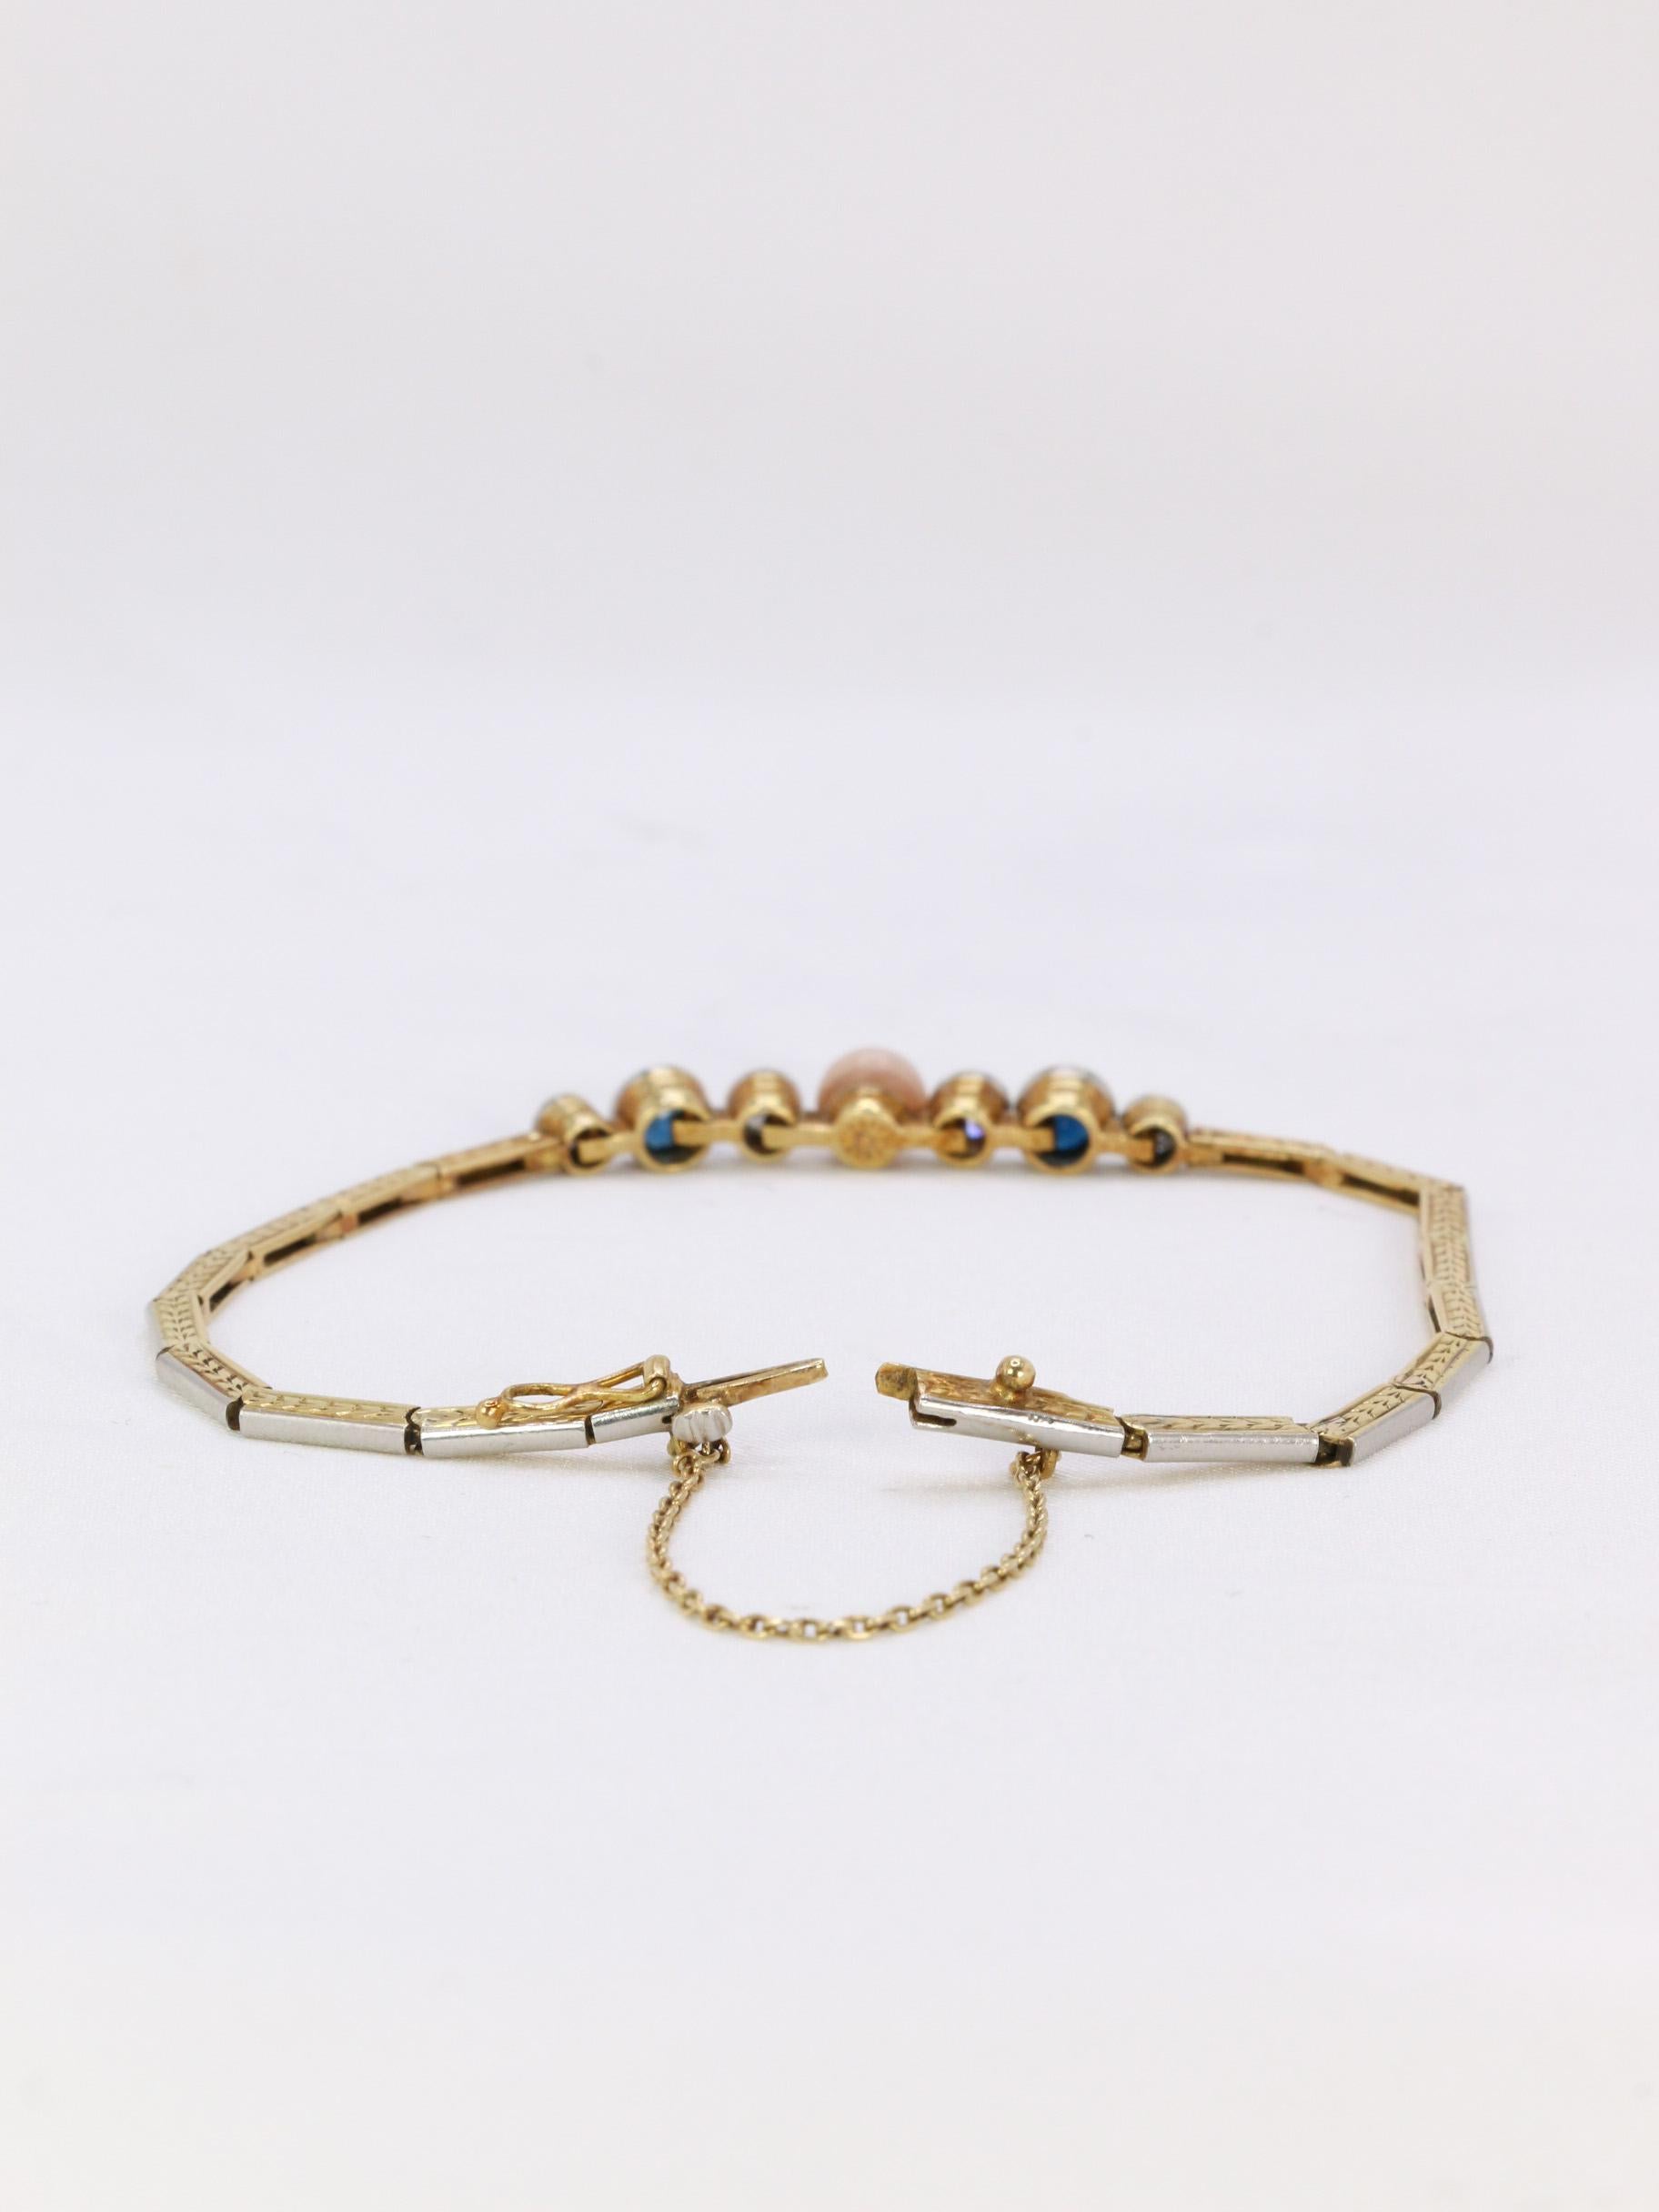 Bracelet en or 18k (750°/°°) composé d'un motif central comportant une perle fine bouton rosée, quatre diamants taille ancienne pour un poids total d'environ 0,4 carats et deux saphirs pour un poids d'environ 0,5 carats. Le bracelet articulé est